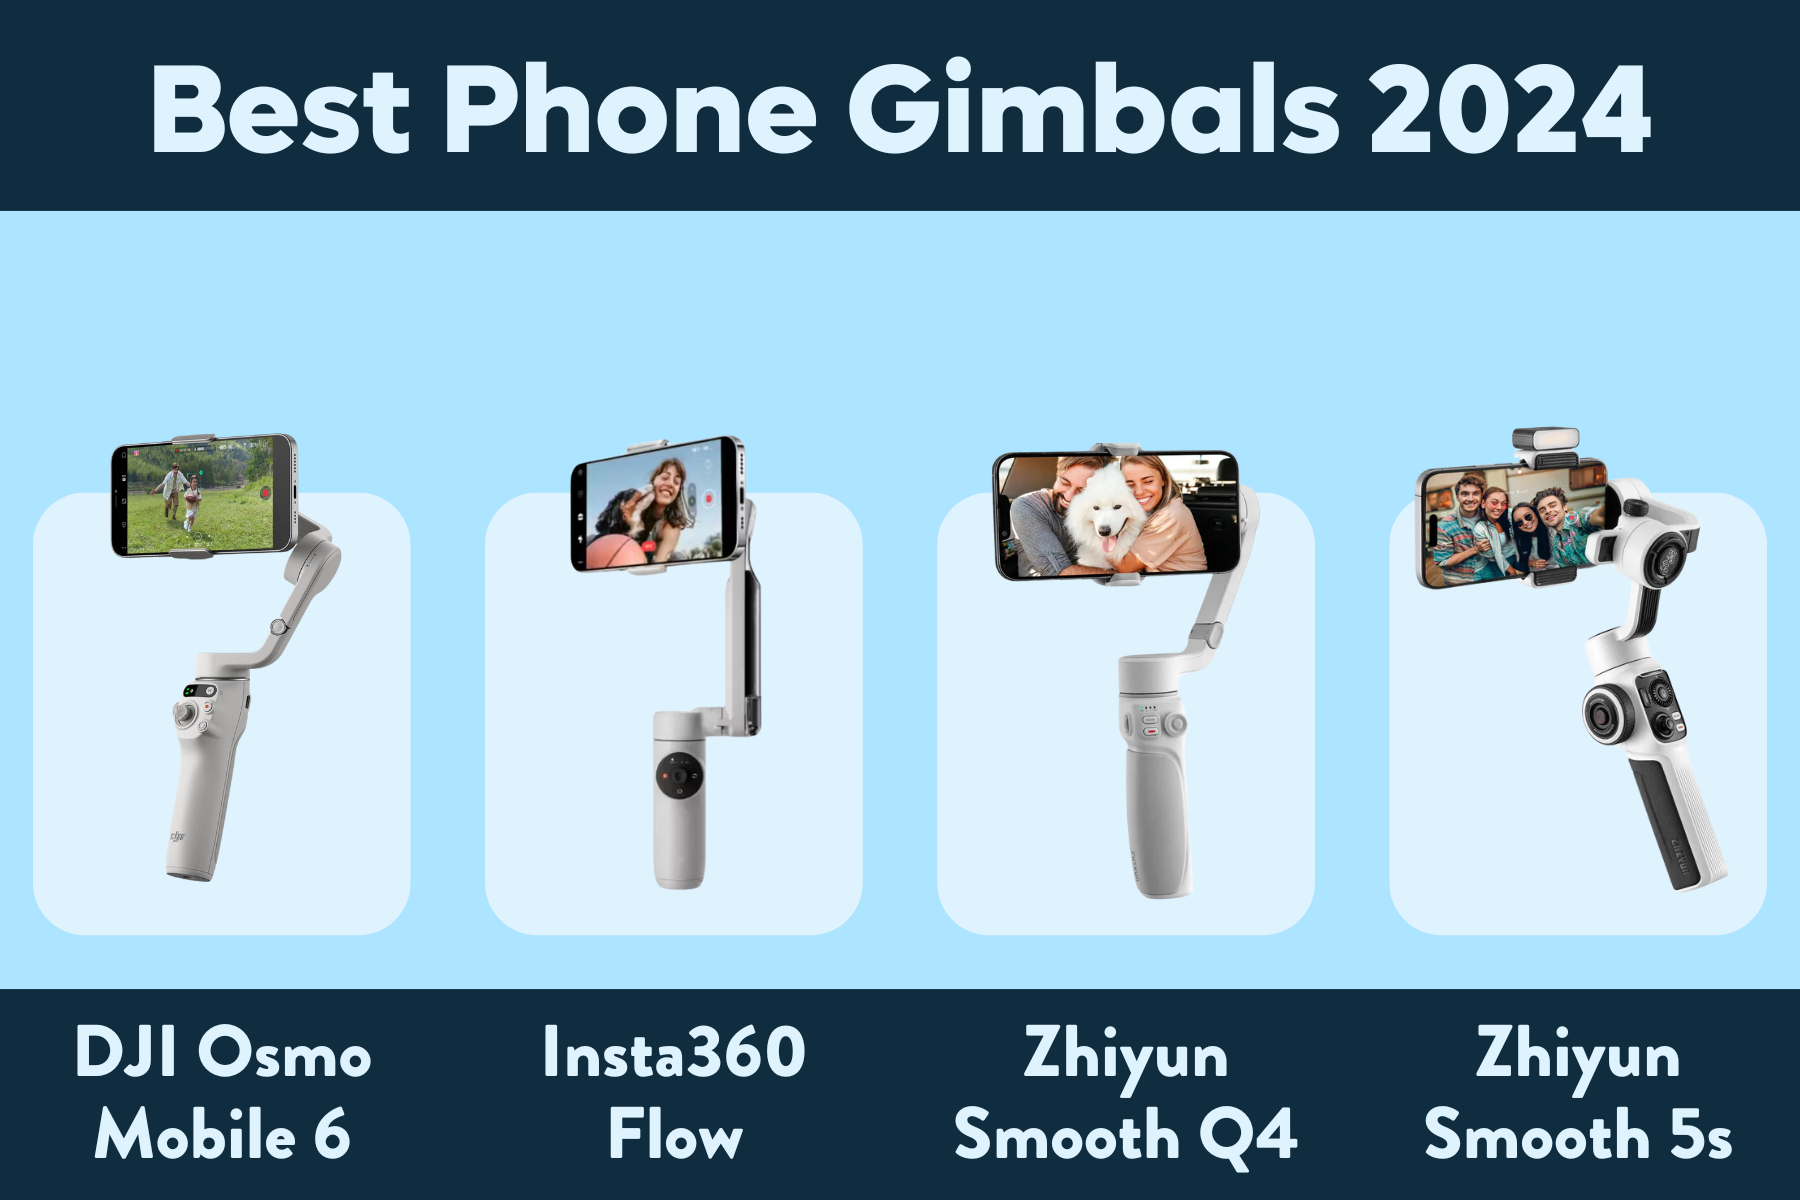 Best Phone Gimbals 2024